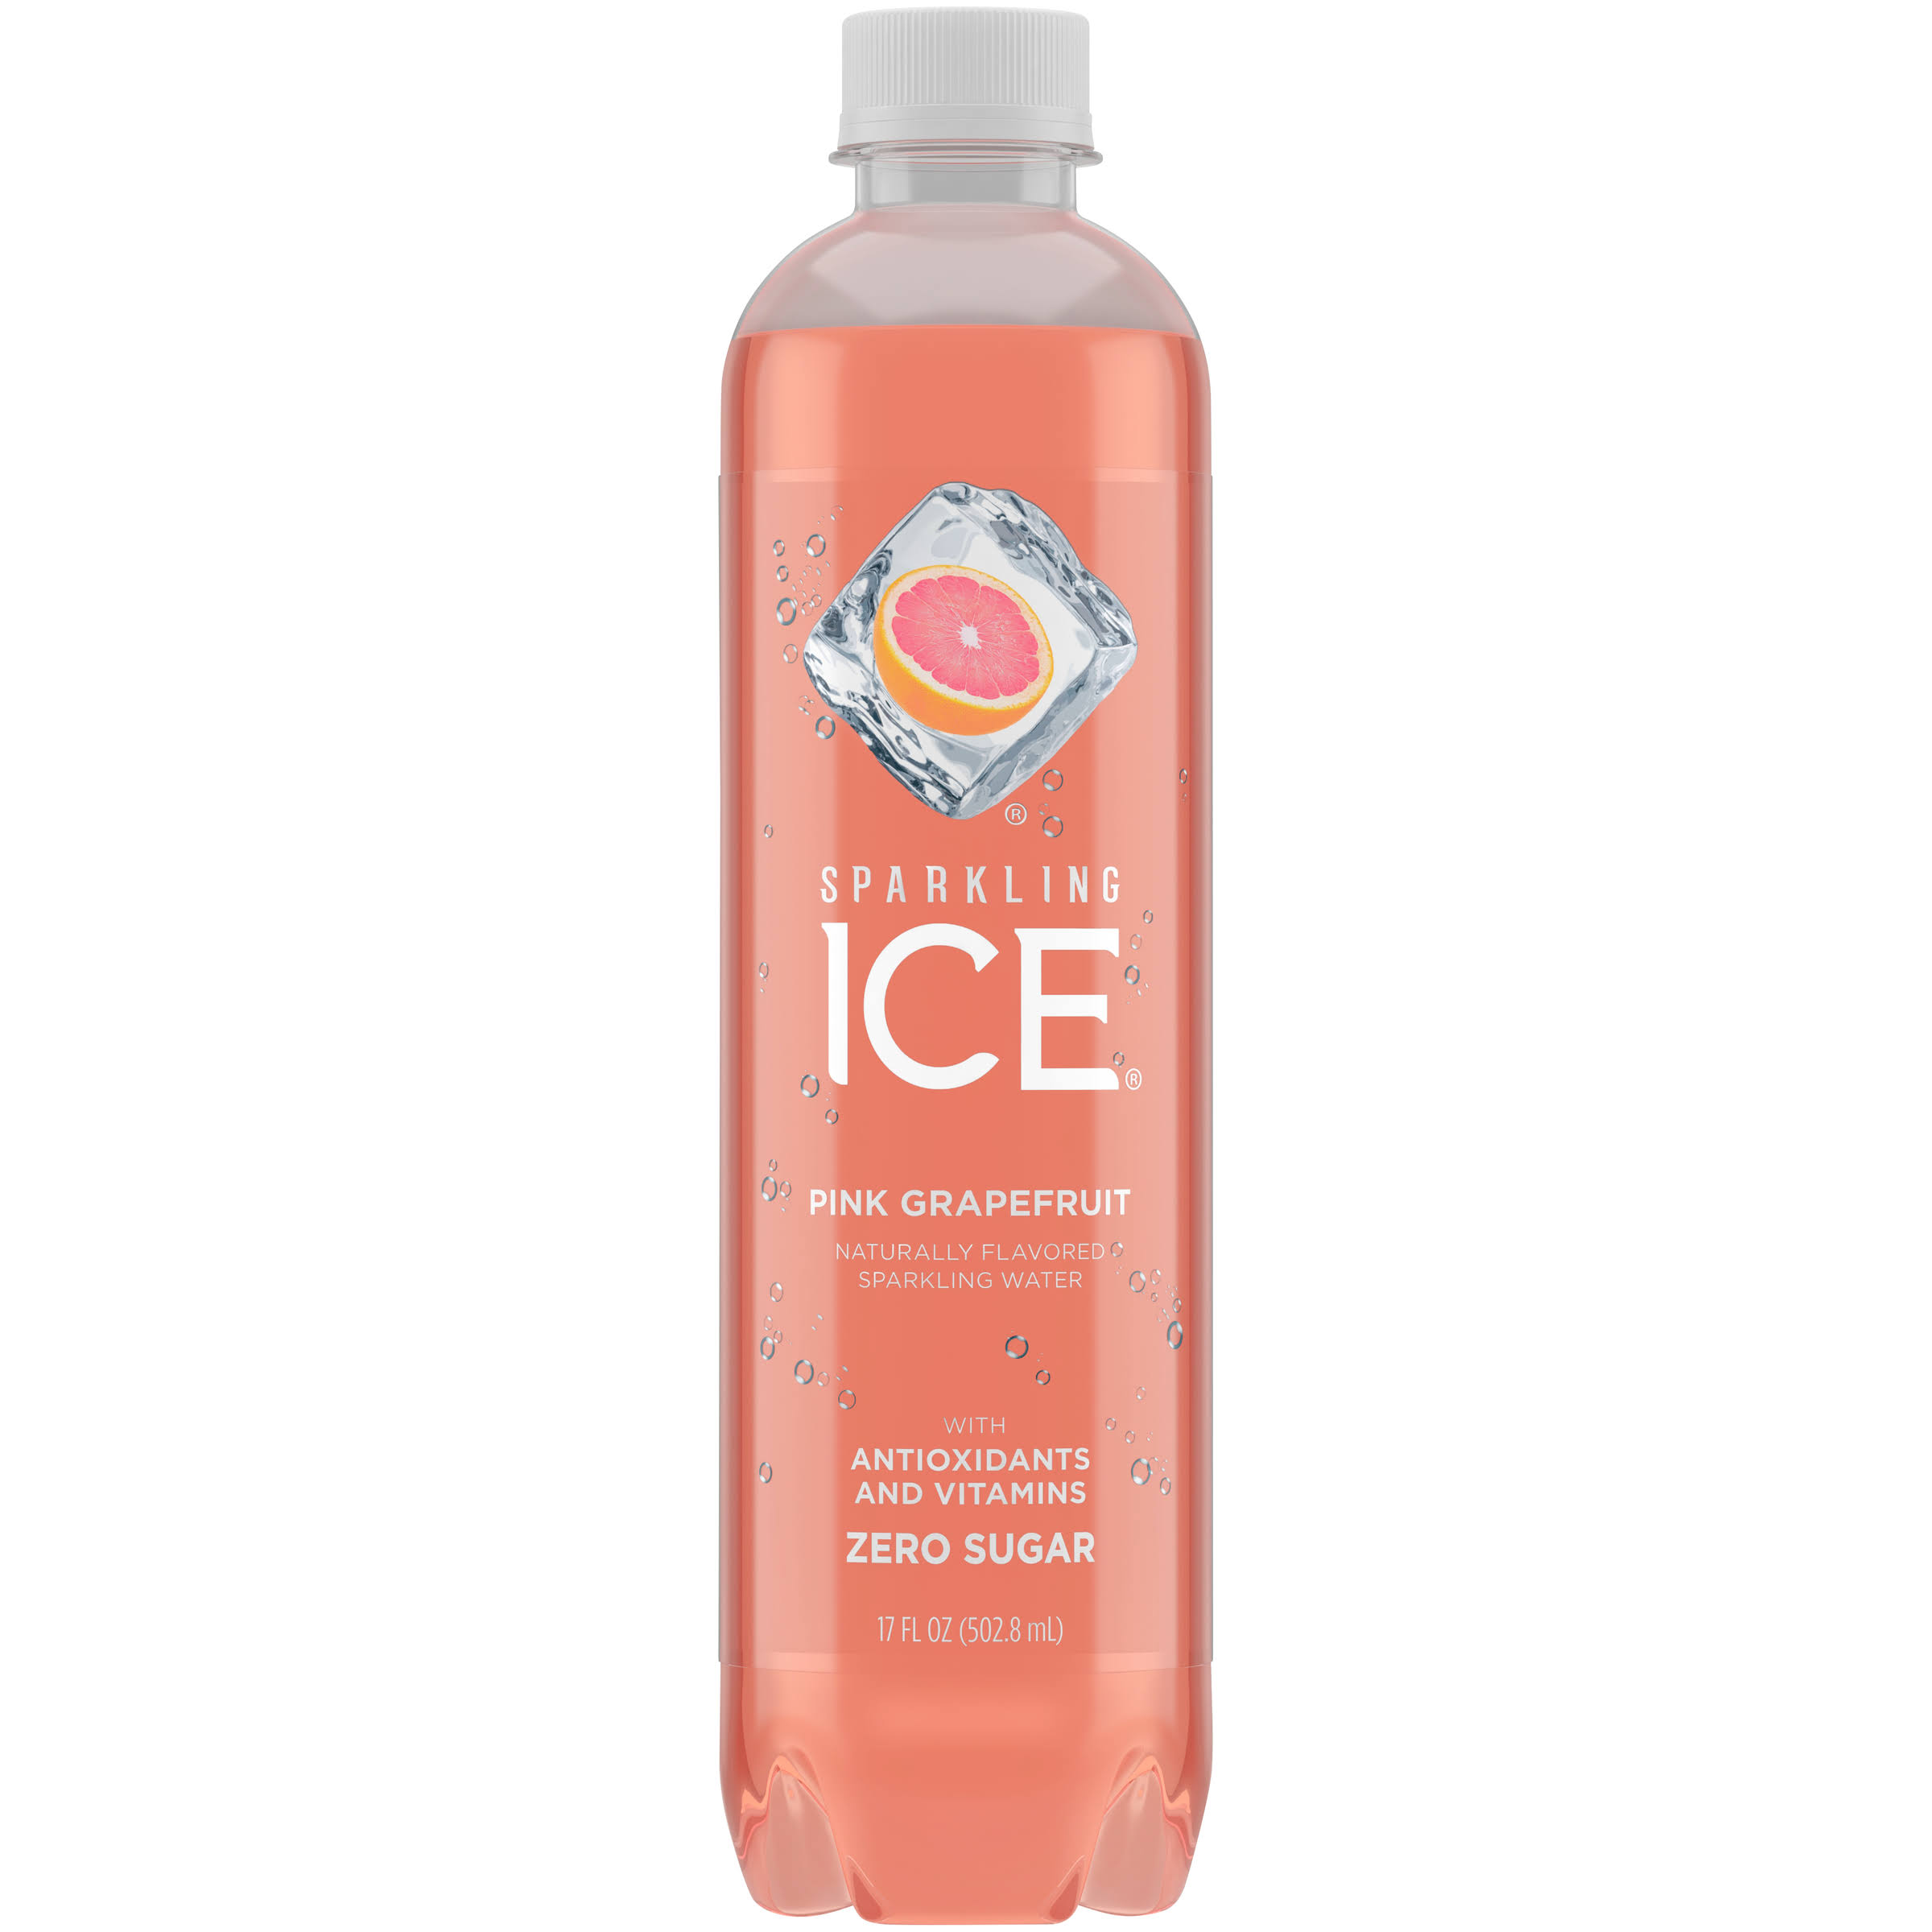 Sparkling Ice Sparkling Water, Zero Sugar, Pink Grapefruit - 17 fl oz